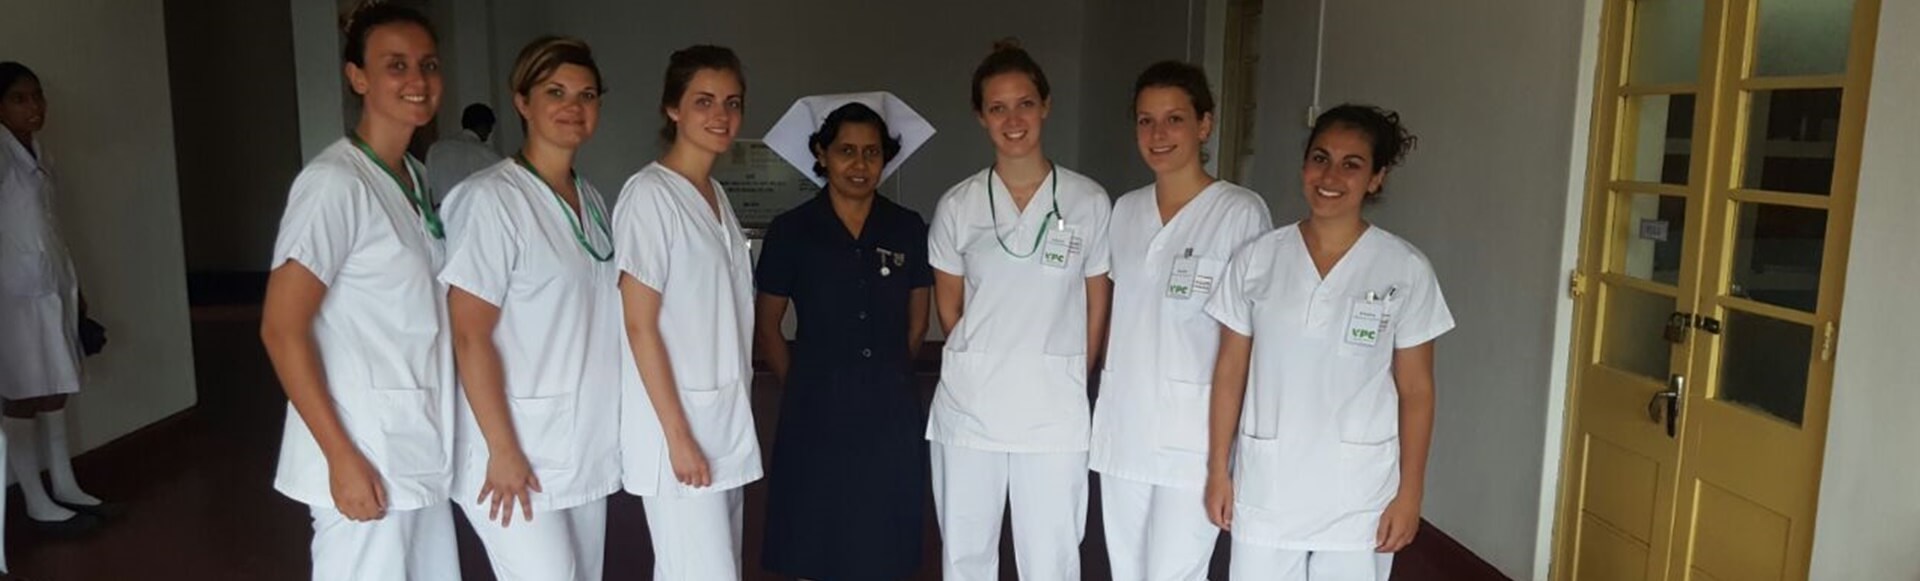 Programma di volontariato sanitario pre-medico e infermieristico Sri Lanka